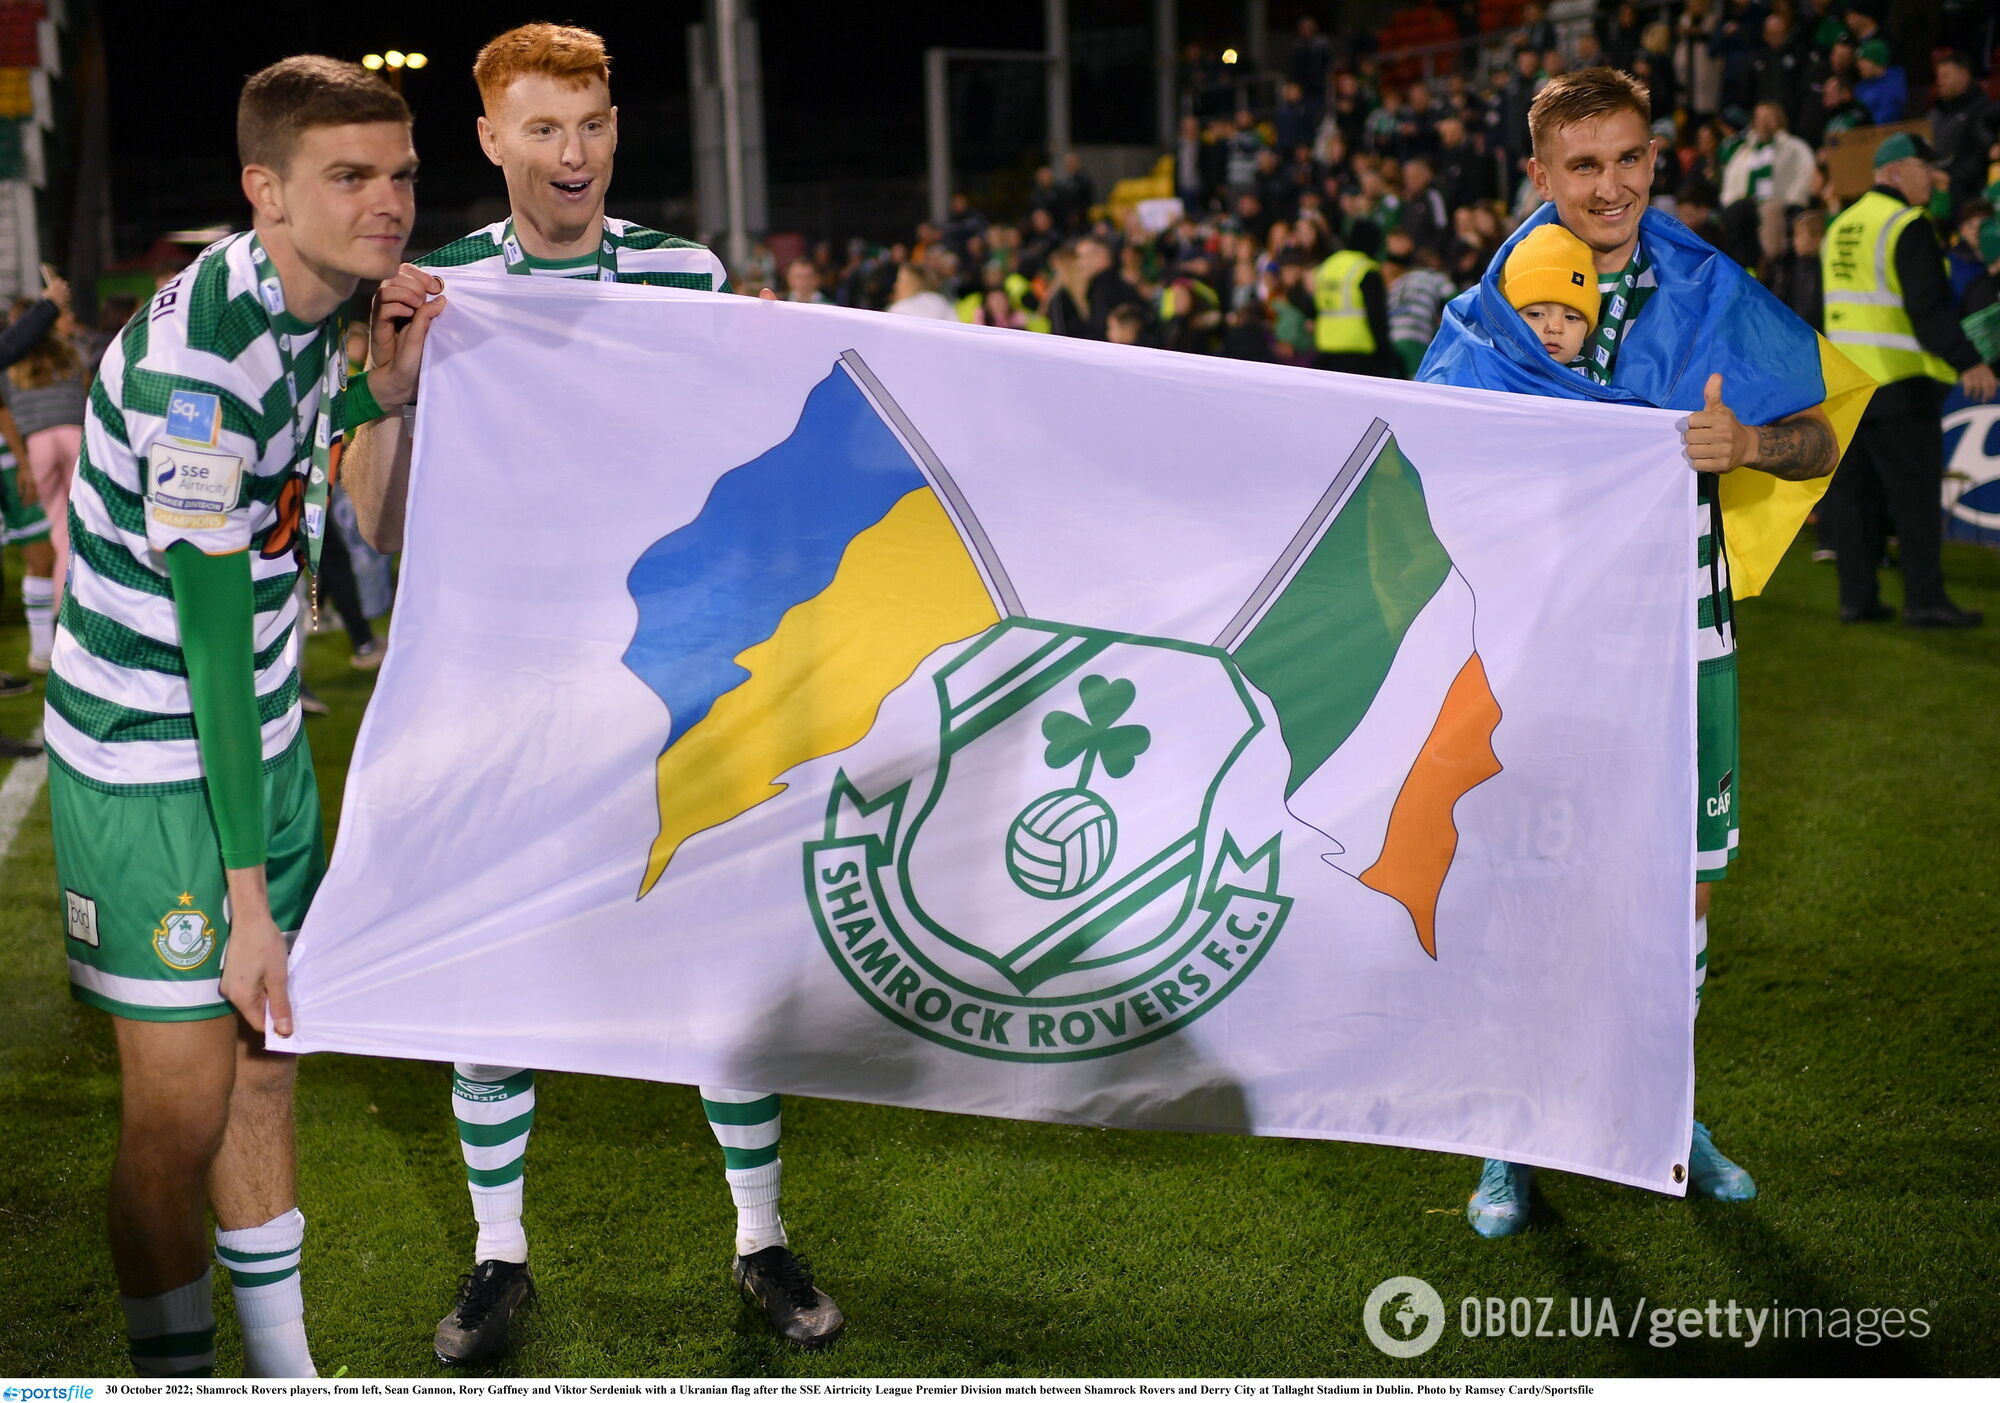 Футболисты чемпиона Ирландии потребовали отказаться от русского языка, так как "это путинский язык"